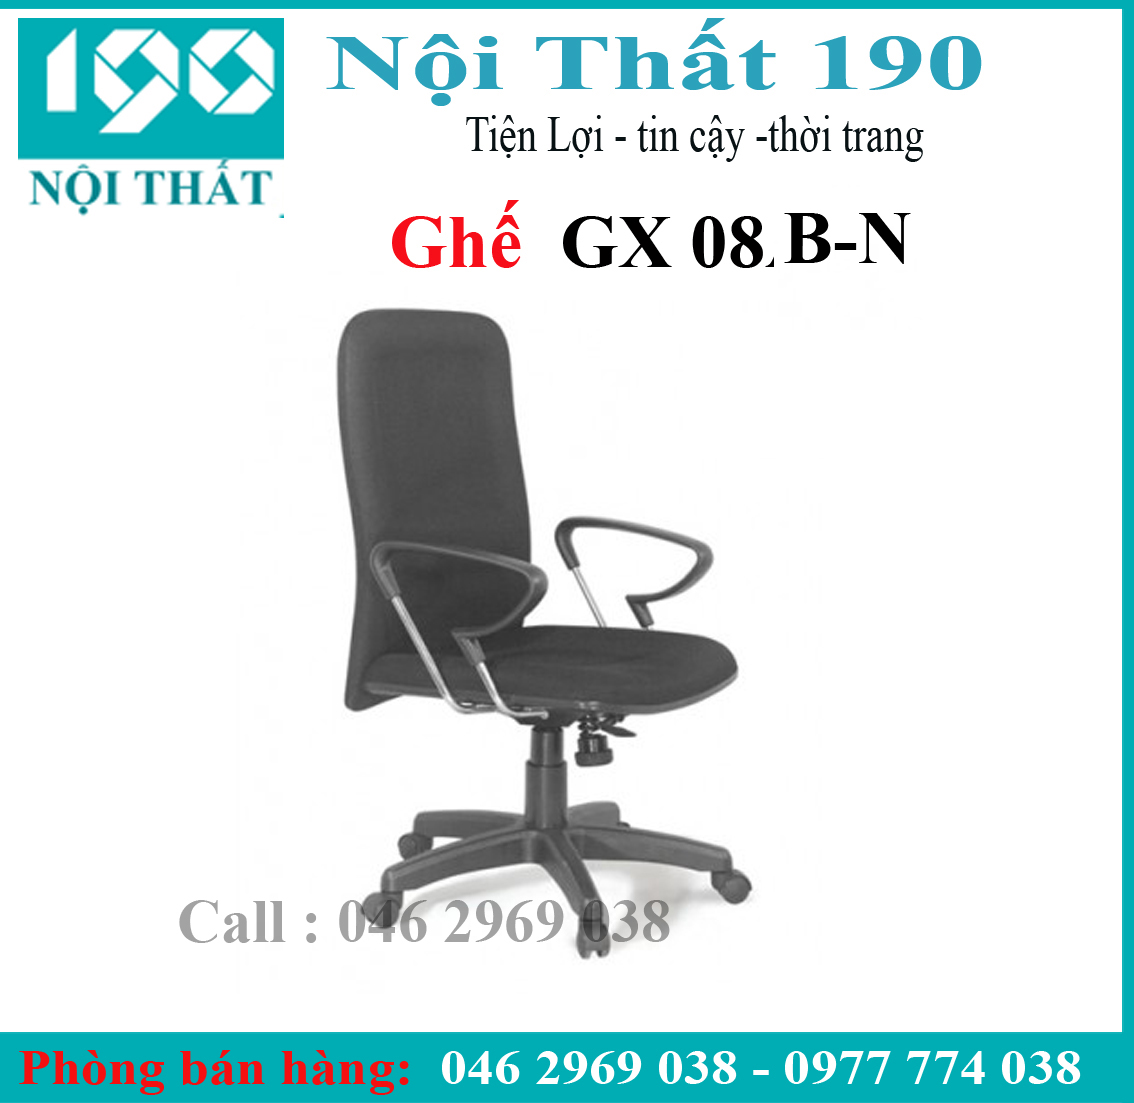 Ghế xoay da GX08B-N